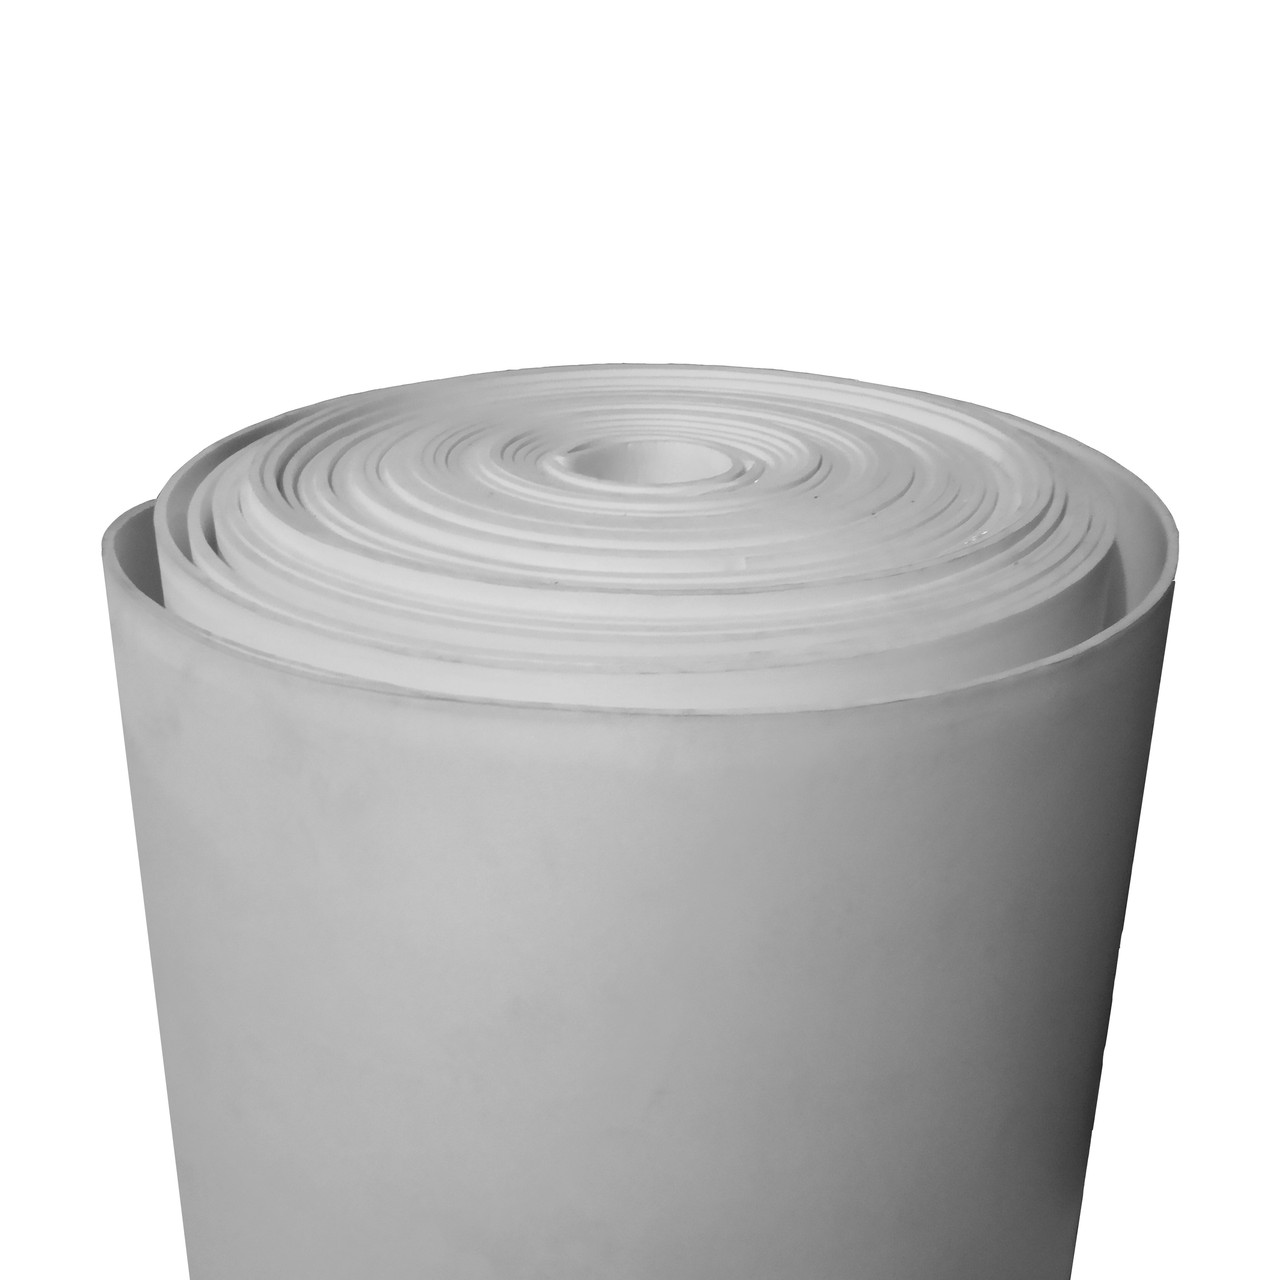 Фізично зшитий спінений поліетилен 5 мм 33 кг/м³ сірий (ширина 1,5 м)